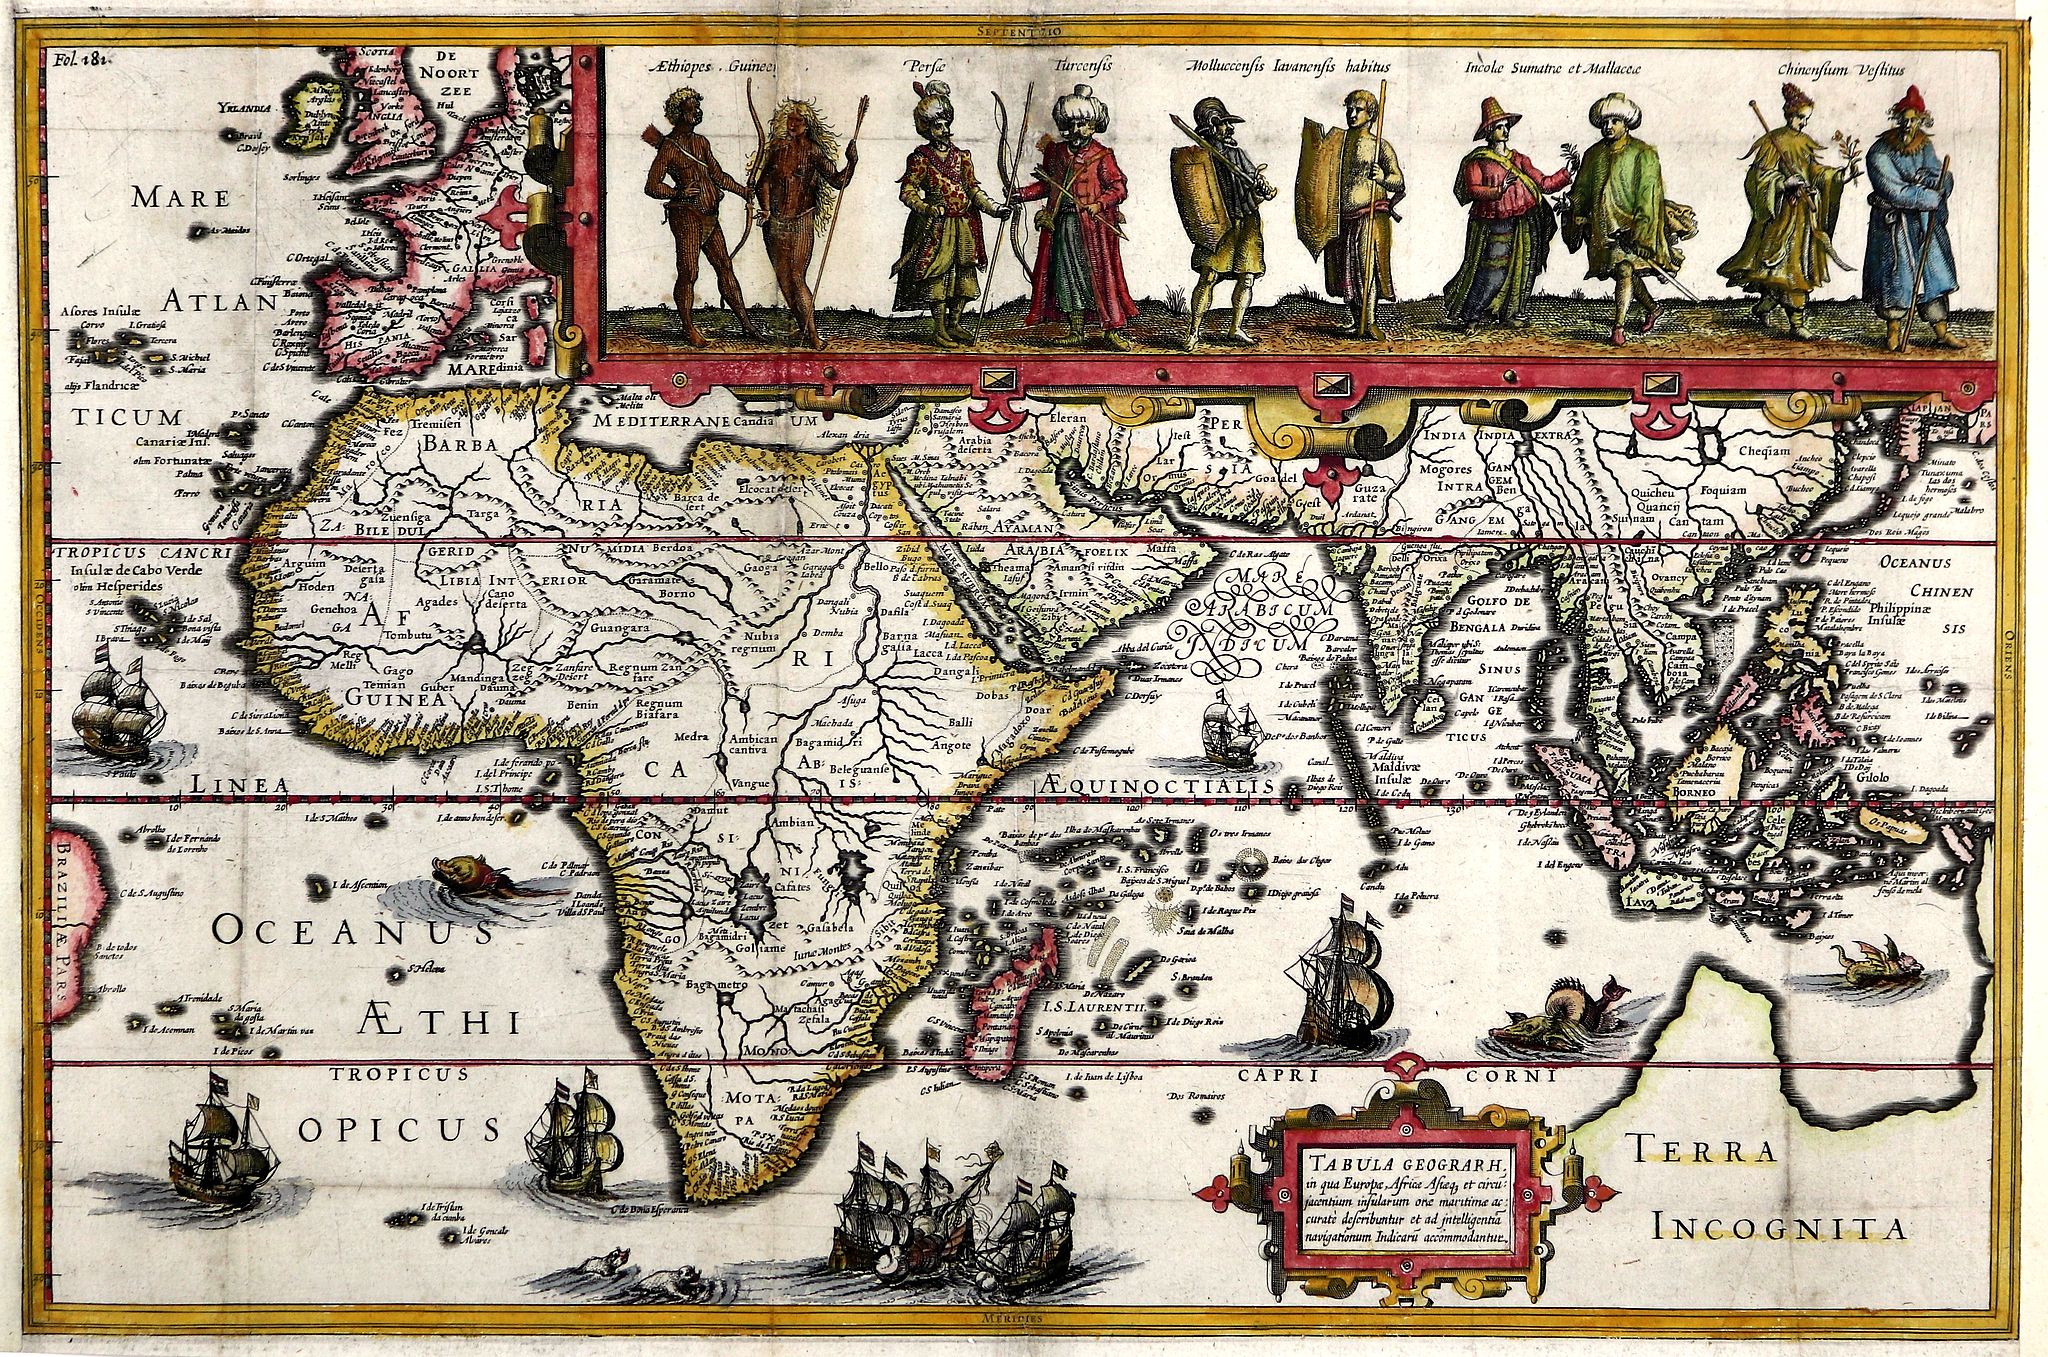 Tabula Geograph in qua Europa, Africa, Asiaq. et Circumiacentium Insularum Ora Maritima Accurata Describuntur 